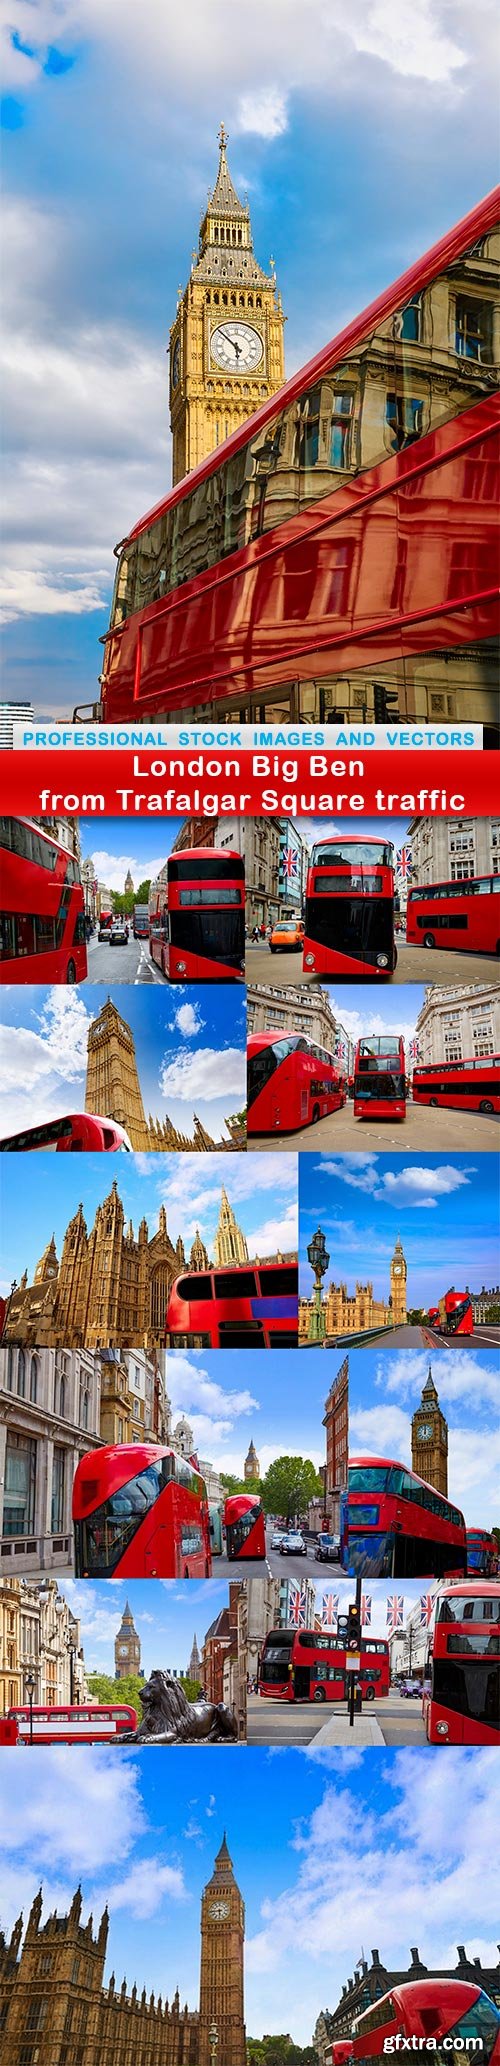 London Big Ben from Trafalgar Square traffic - 12 UHQ JPEG